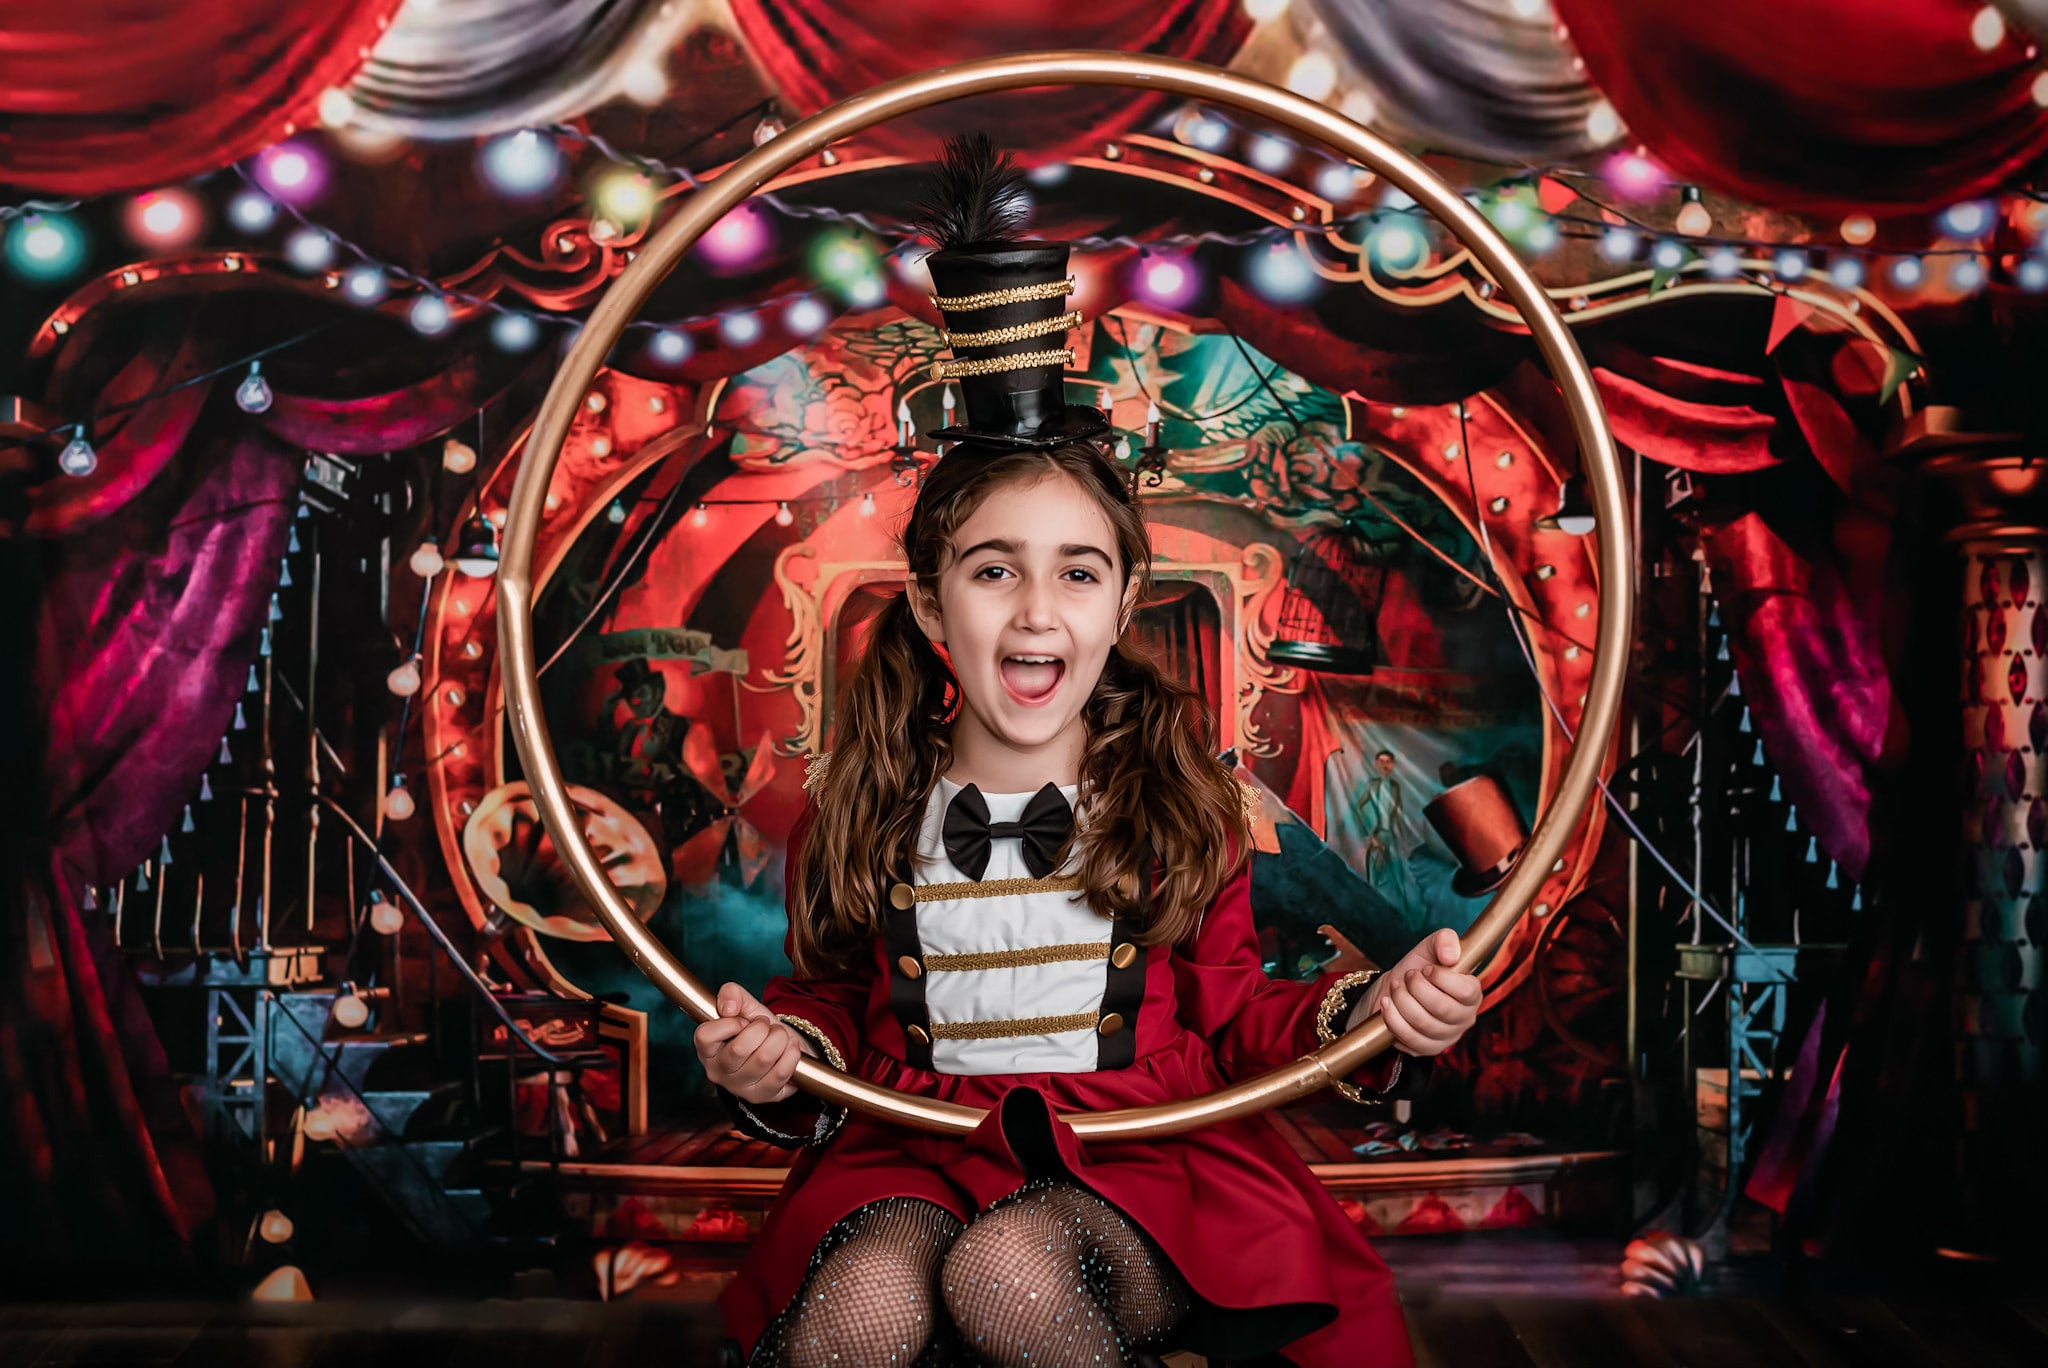 Kate Cirque Rouge Lumières colorées Toile de fond conçue par Rosabell Photographie